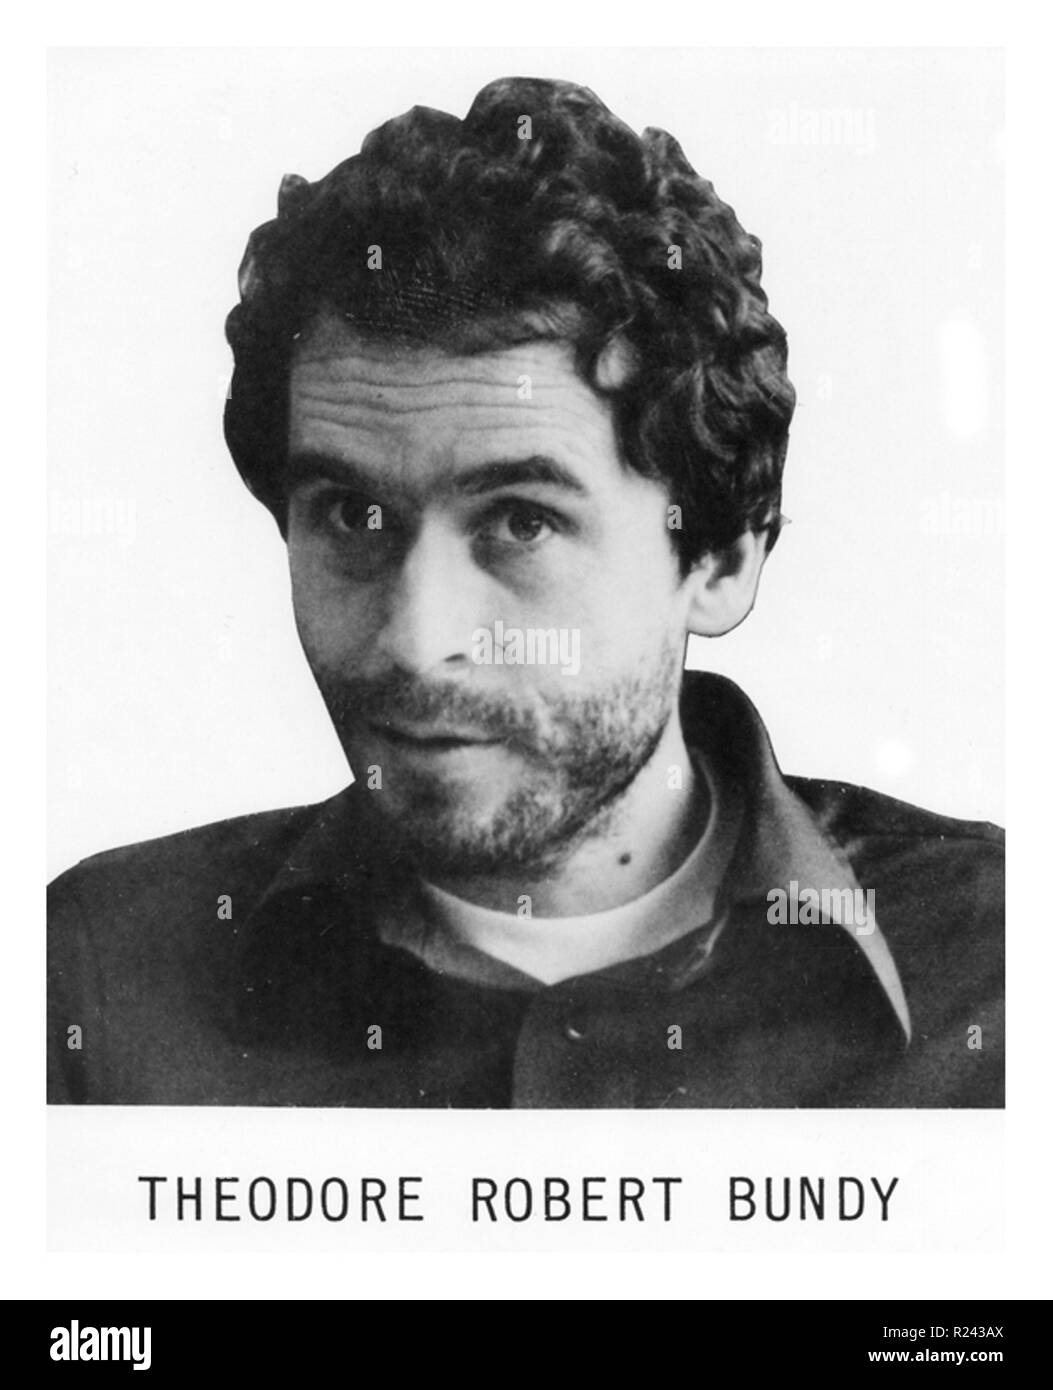 El FBI quería cartel de Theodore Robert 'Ted Bundy' (nacido Theodore Robert Cowell; el 24 de noviembre de 1946 - 24 de enero de 1989) fue un asesino en serie estadounidense, el secuestrador, violador y necrophile que asaltaron y asesinaron a numerosos jóvenes mujeres y niñas durante los años 1970 y posiblemente antes. Poco antes de su ejecución, después de más de una década de denegaciones, confesó a 30 homicidios cometidos en siete estados entre 1974 y 1978 Foto de stock